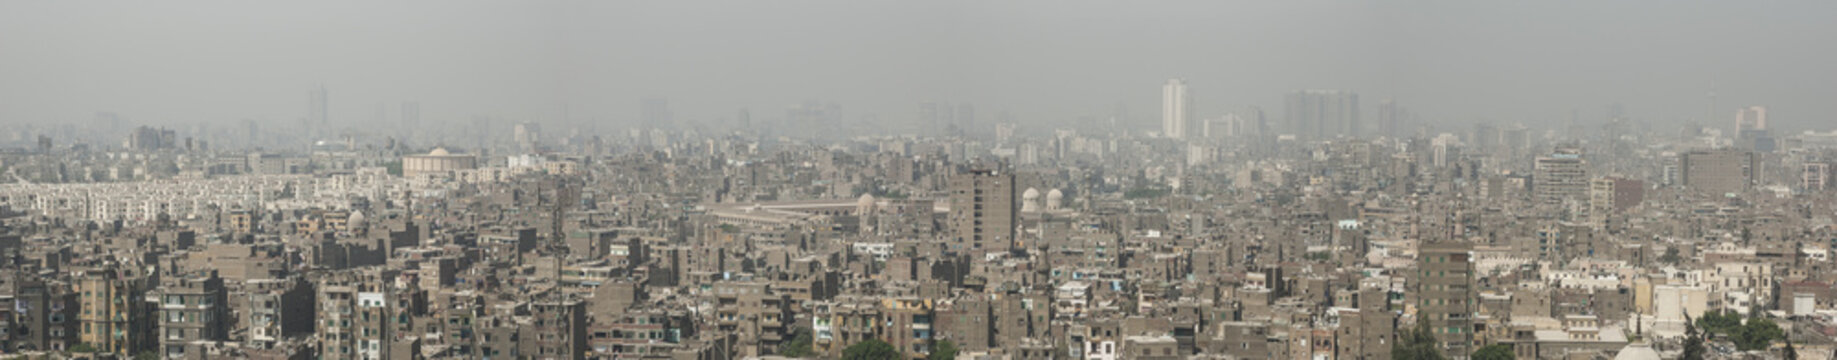 Veduta panoramica della città del Cairo in Egitto
